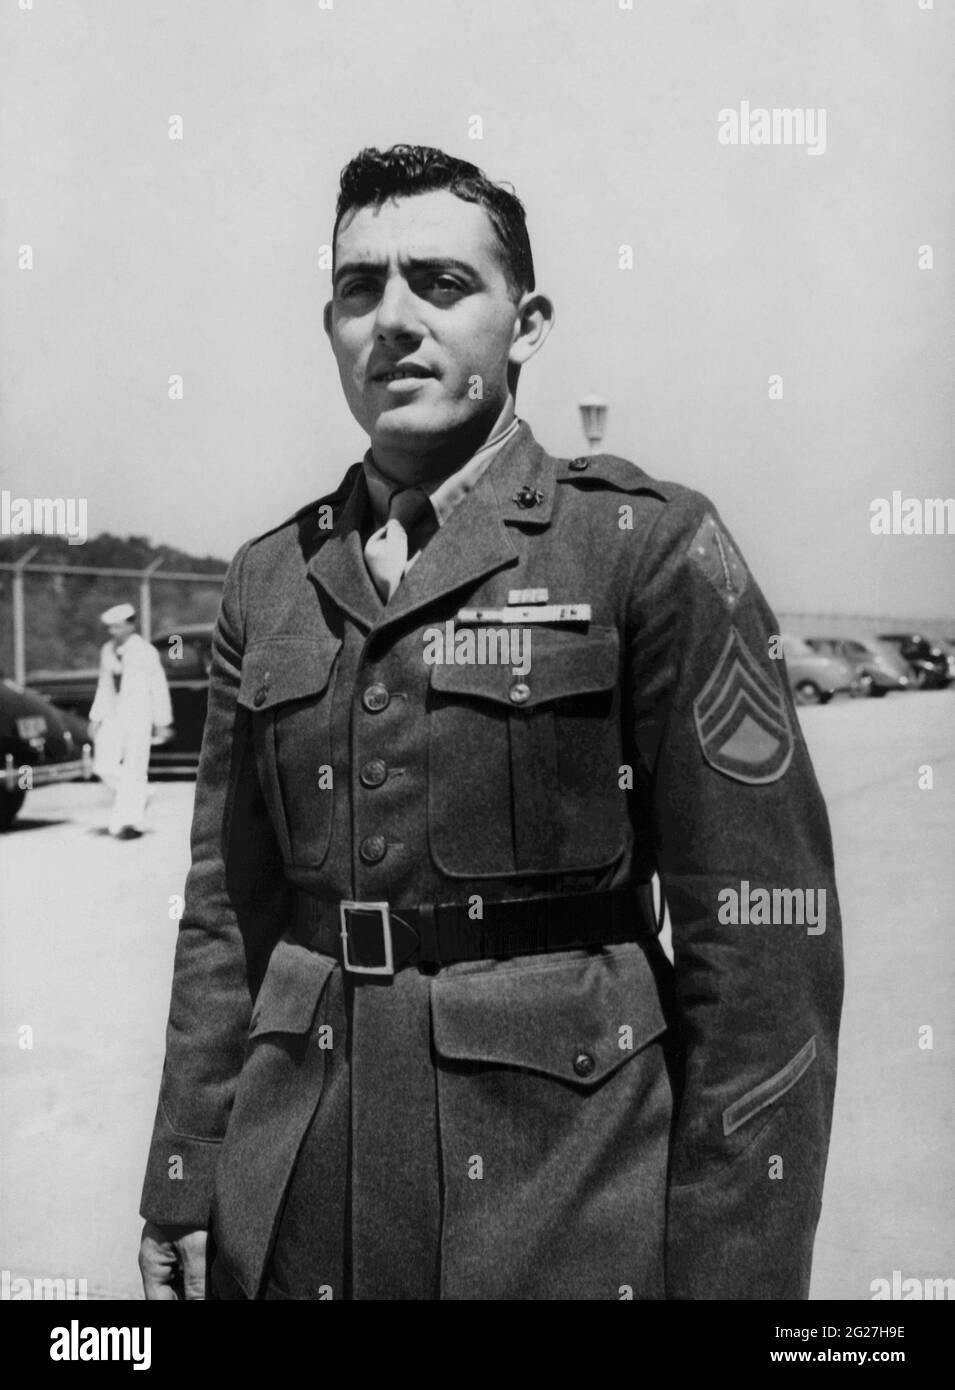 John Basilone, qui a servi comme sergent de Gunnery dans le corps des Marines des États-Unis pendant la Seconde Guerre mondiale. Banque D'Images